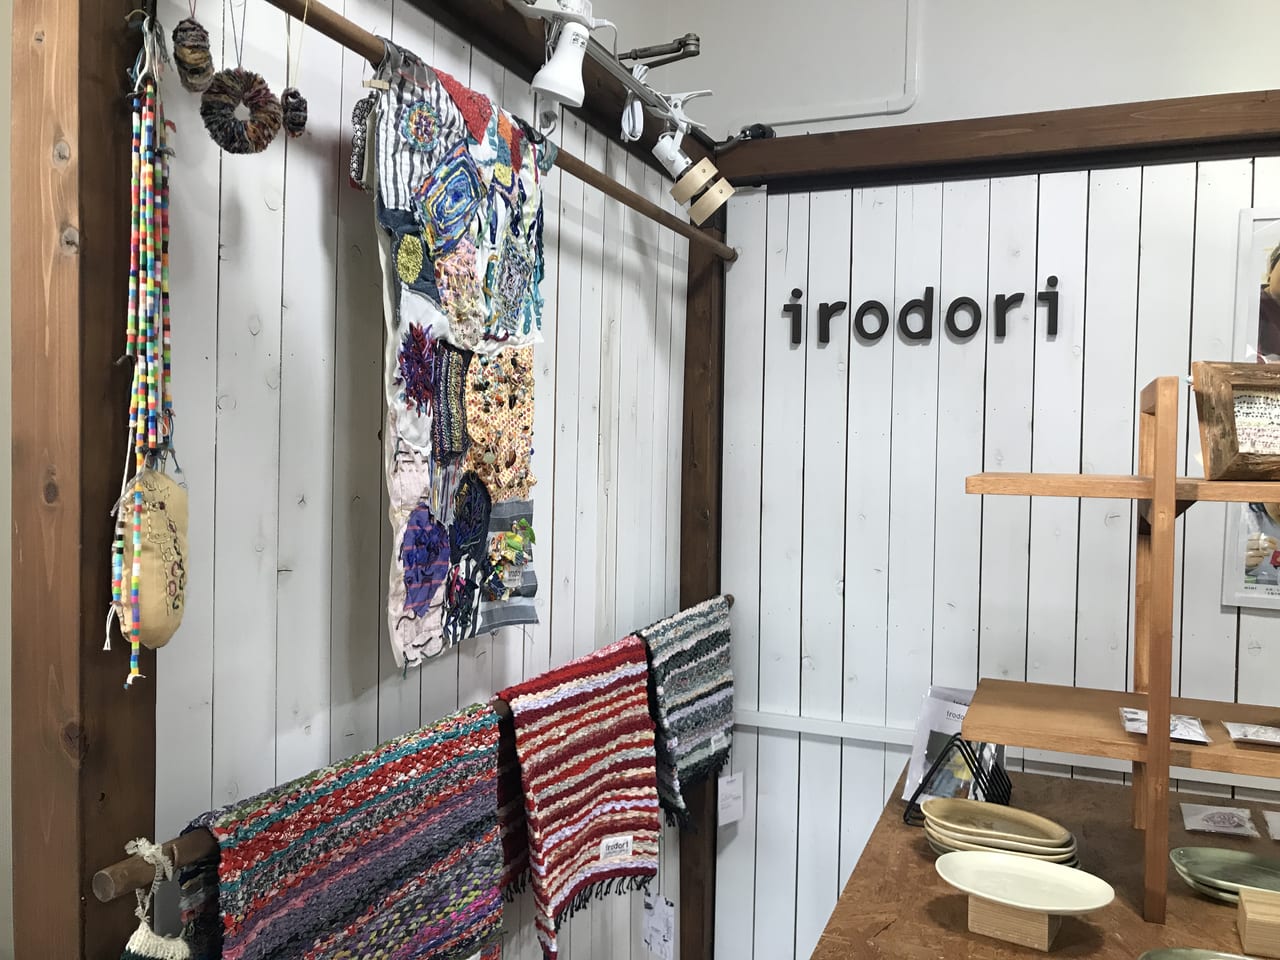 世田谷区立玉川福祉作業所「irodori」はAlll OK!な社会の実現をモノ・コトを届けるブランドです。